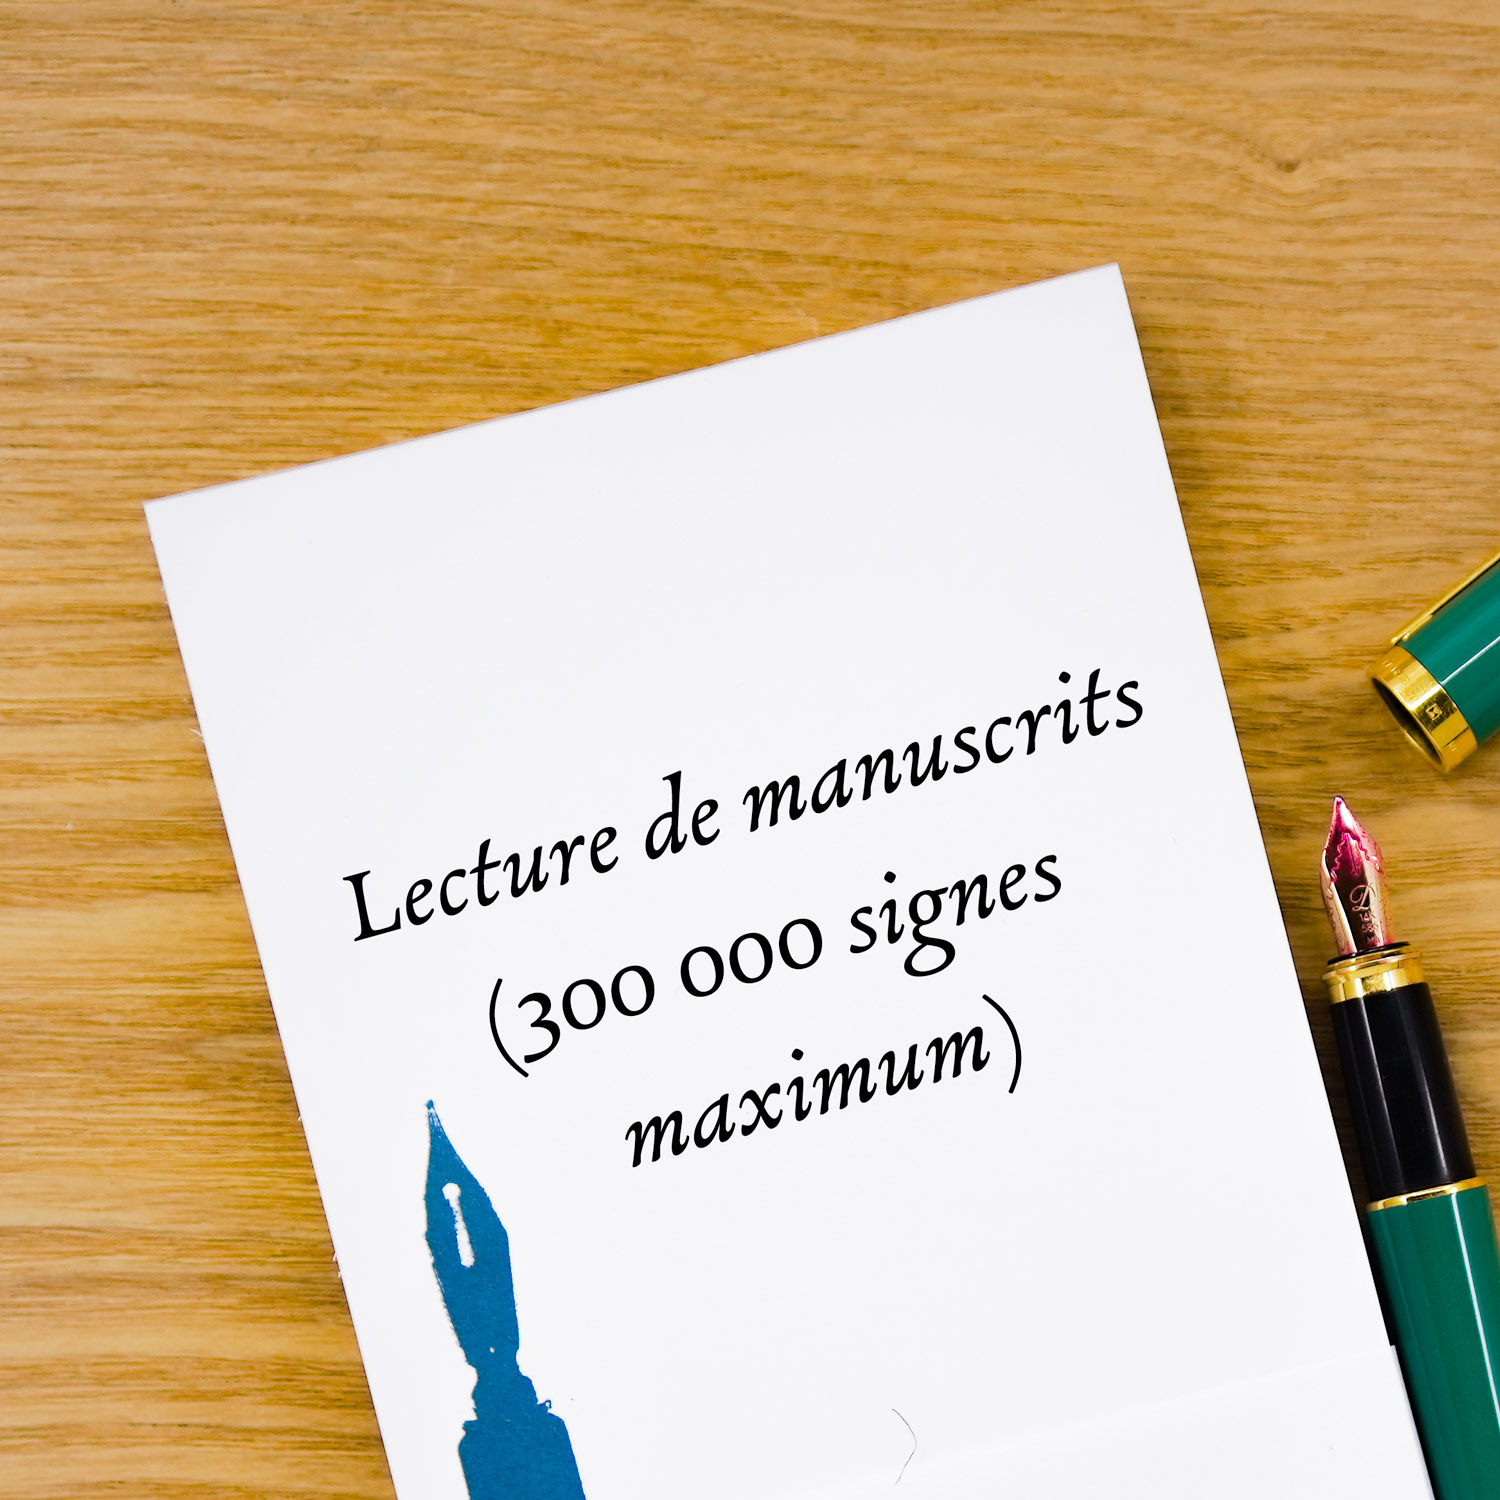 Lecture de manuscrits 300 000 signes